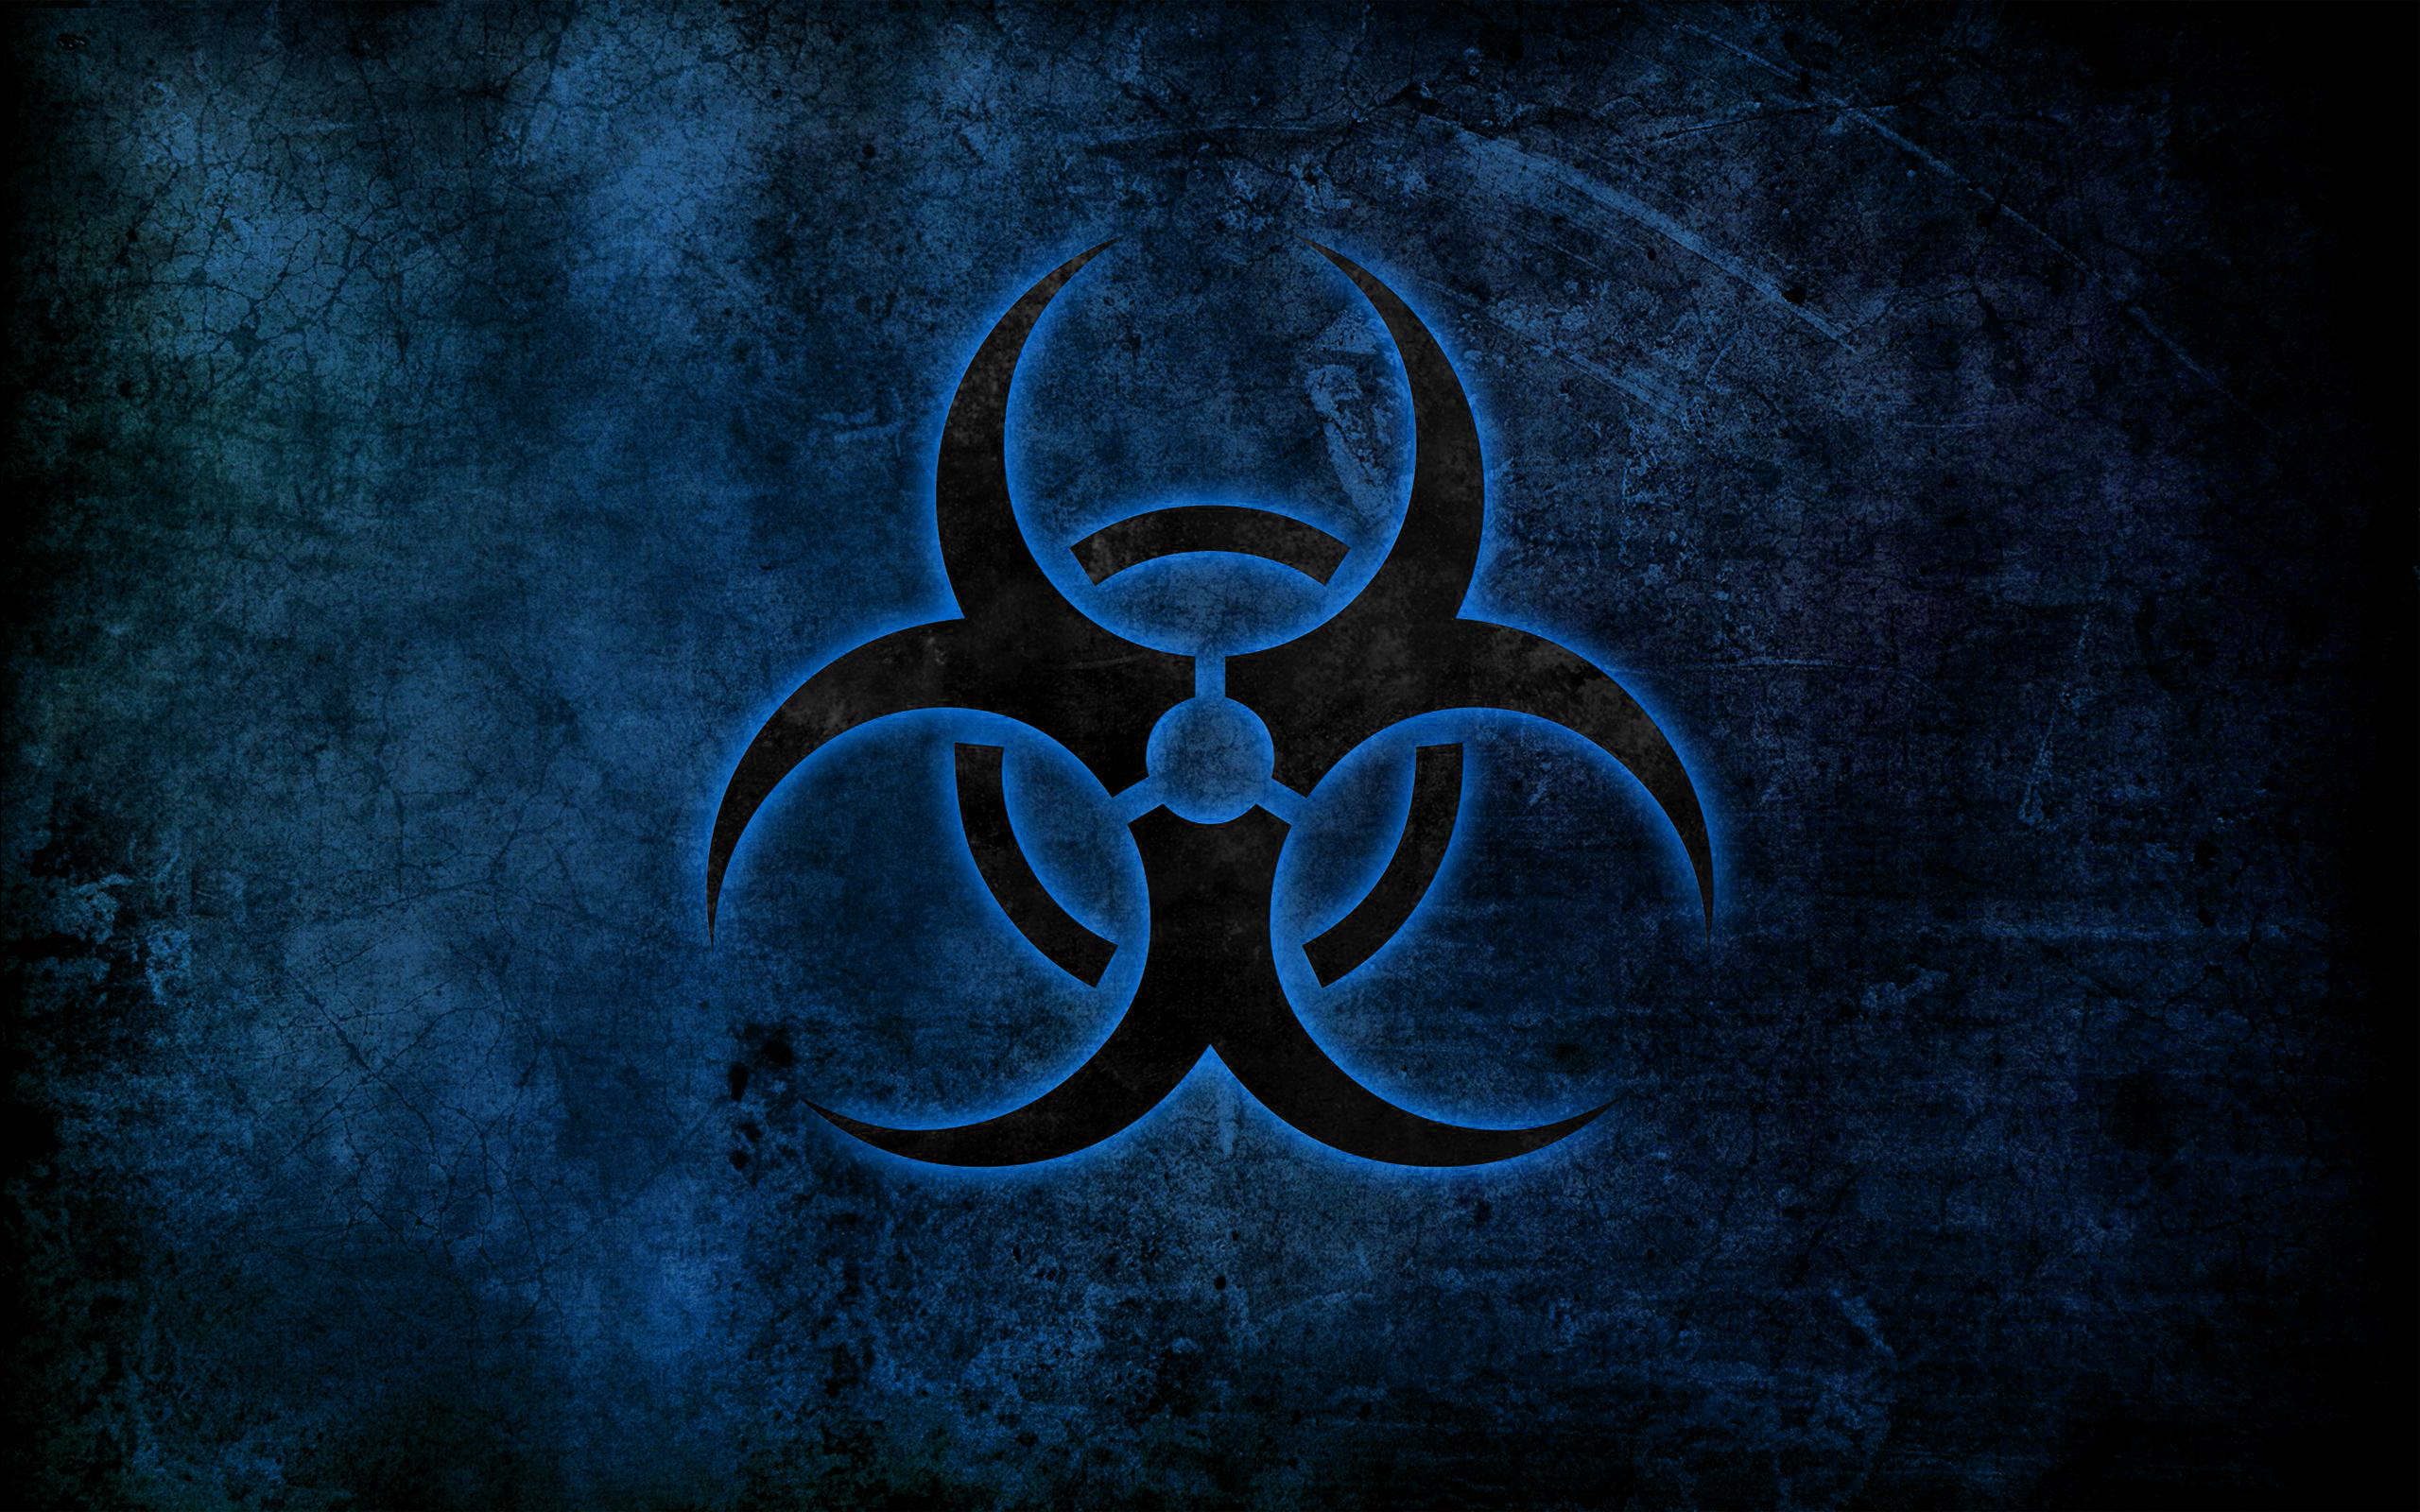 biohazard - desktop wallpaper